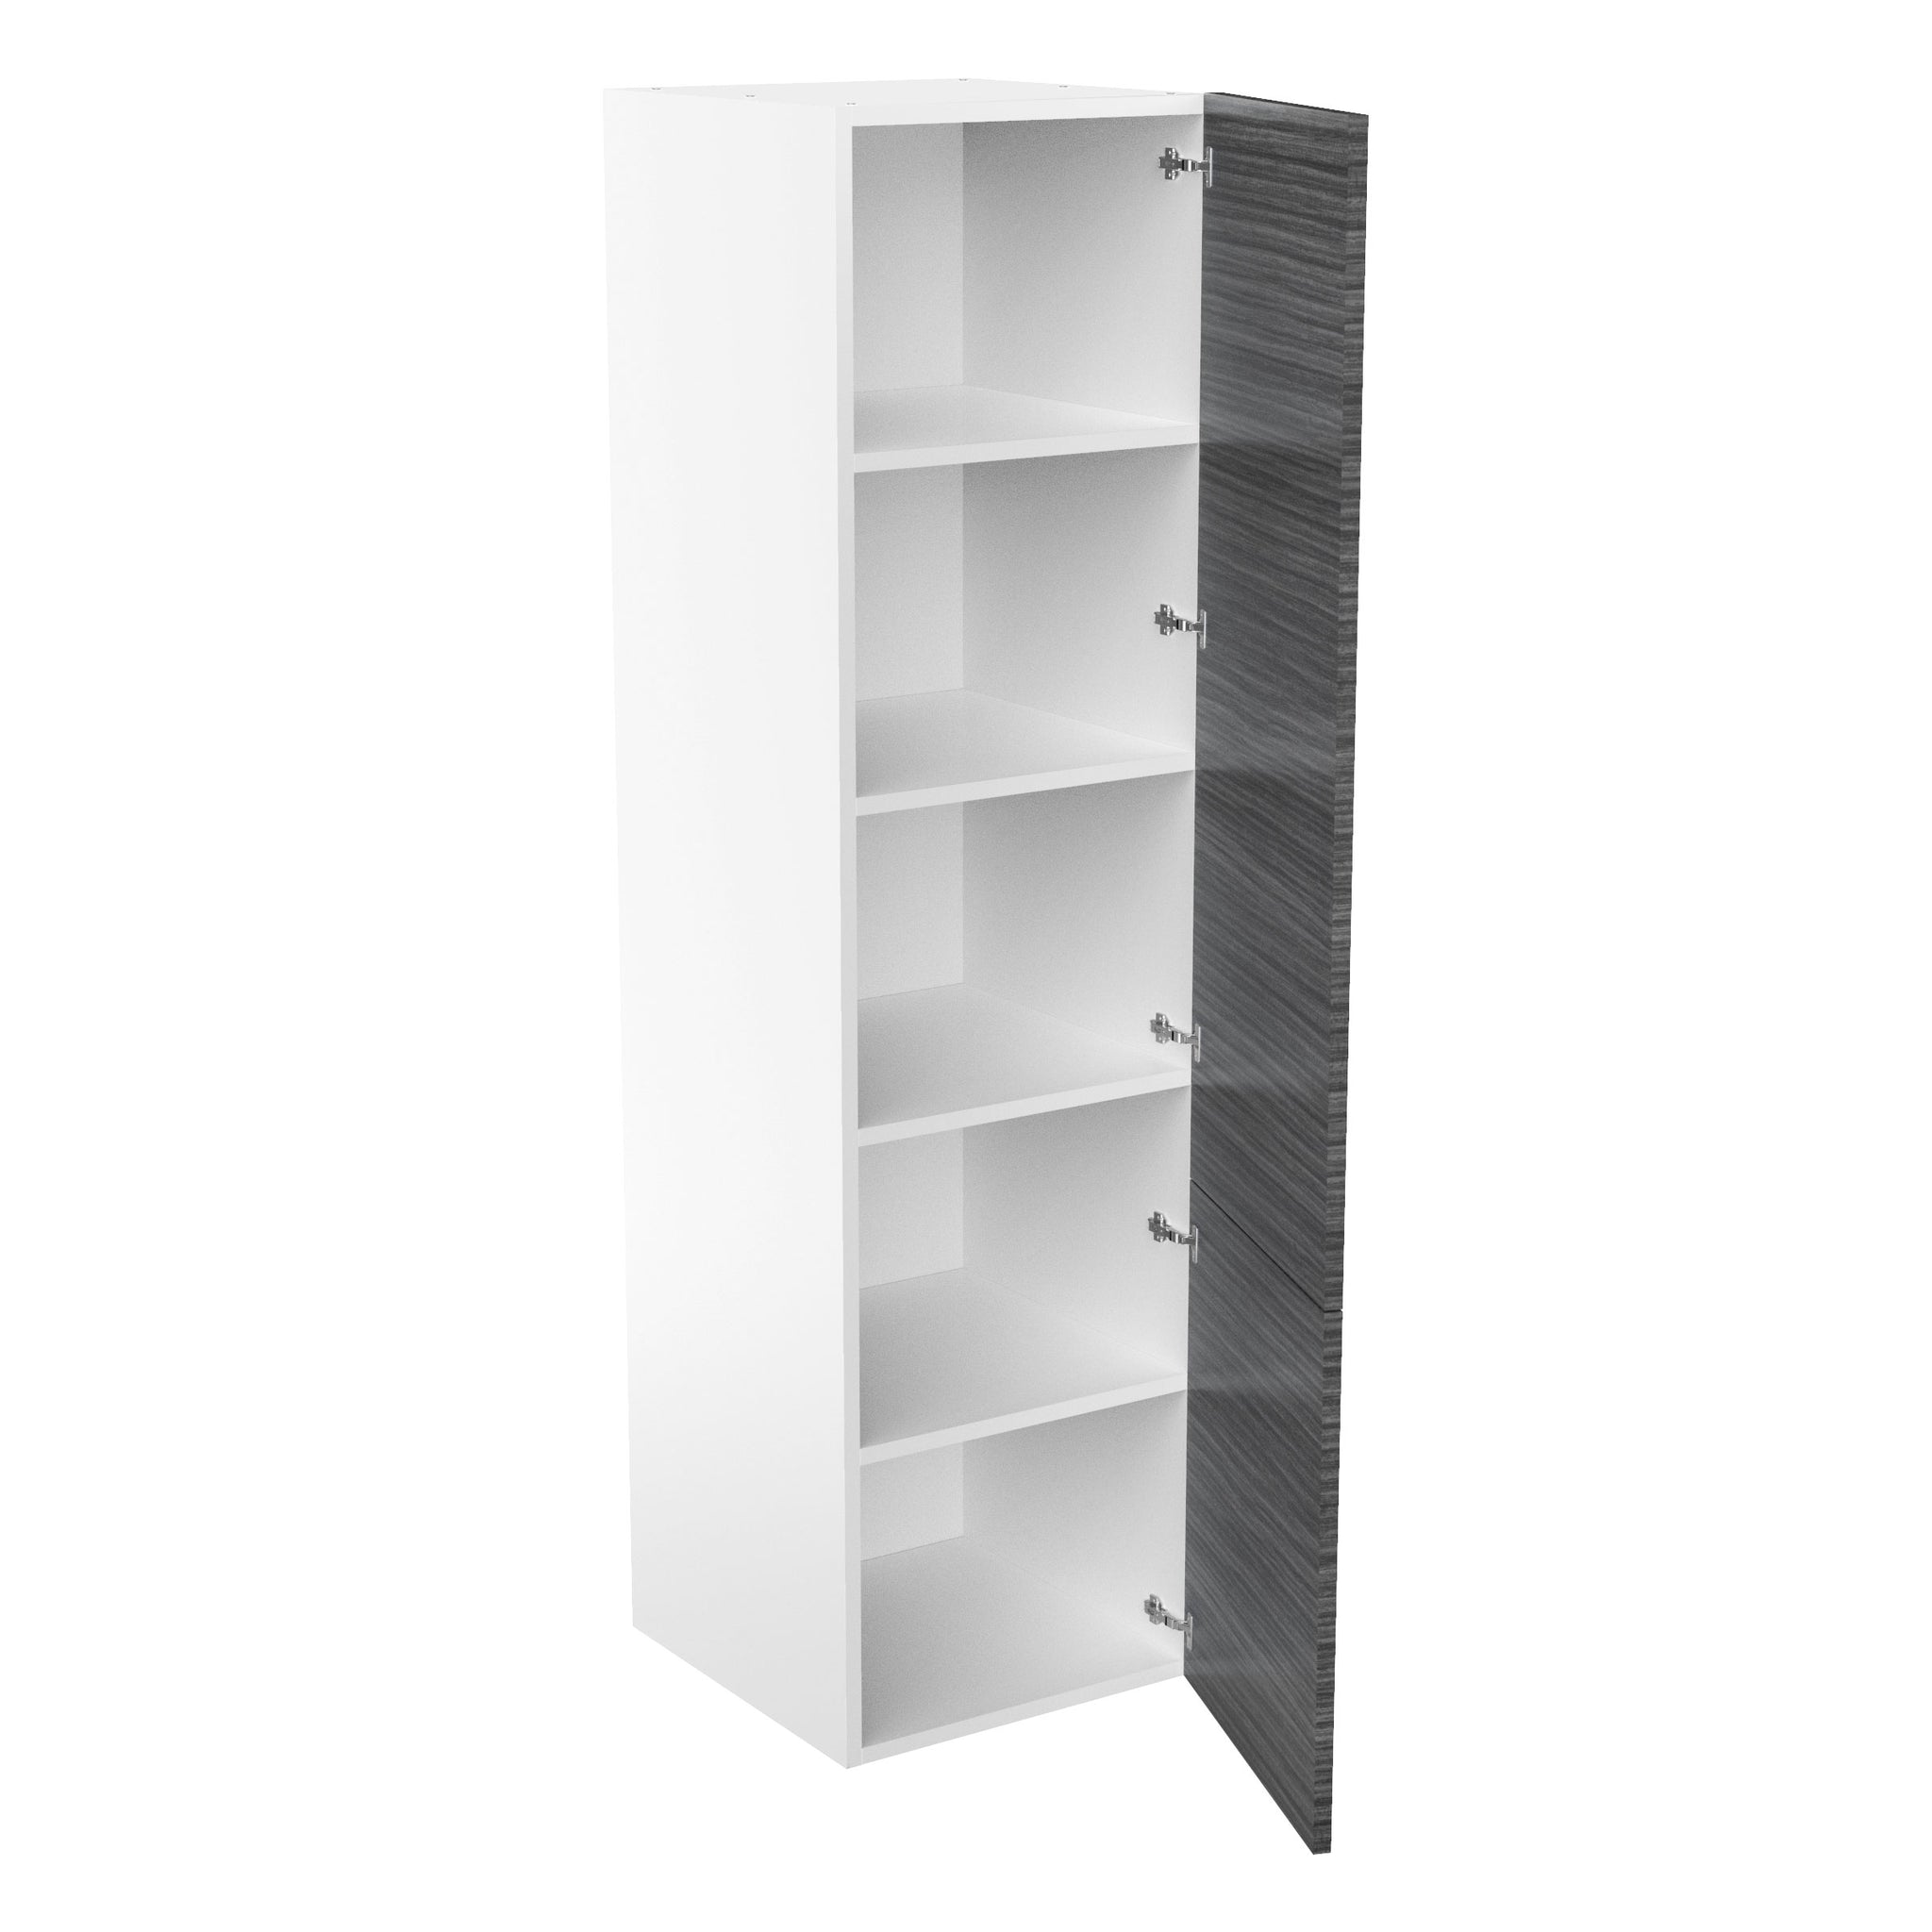 RTA - Dark Wood - Single Door Tall Cabinets | 24"W x 90"H x 24"D